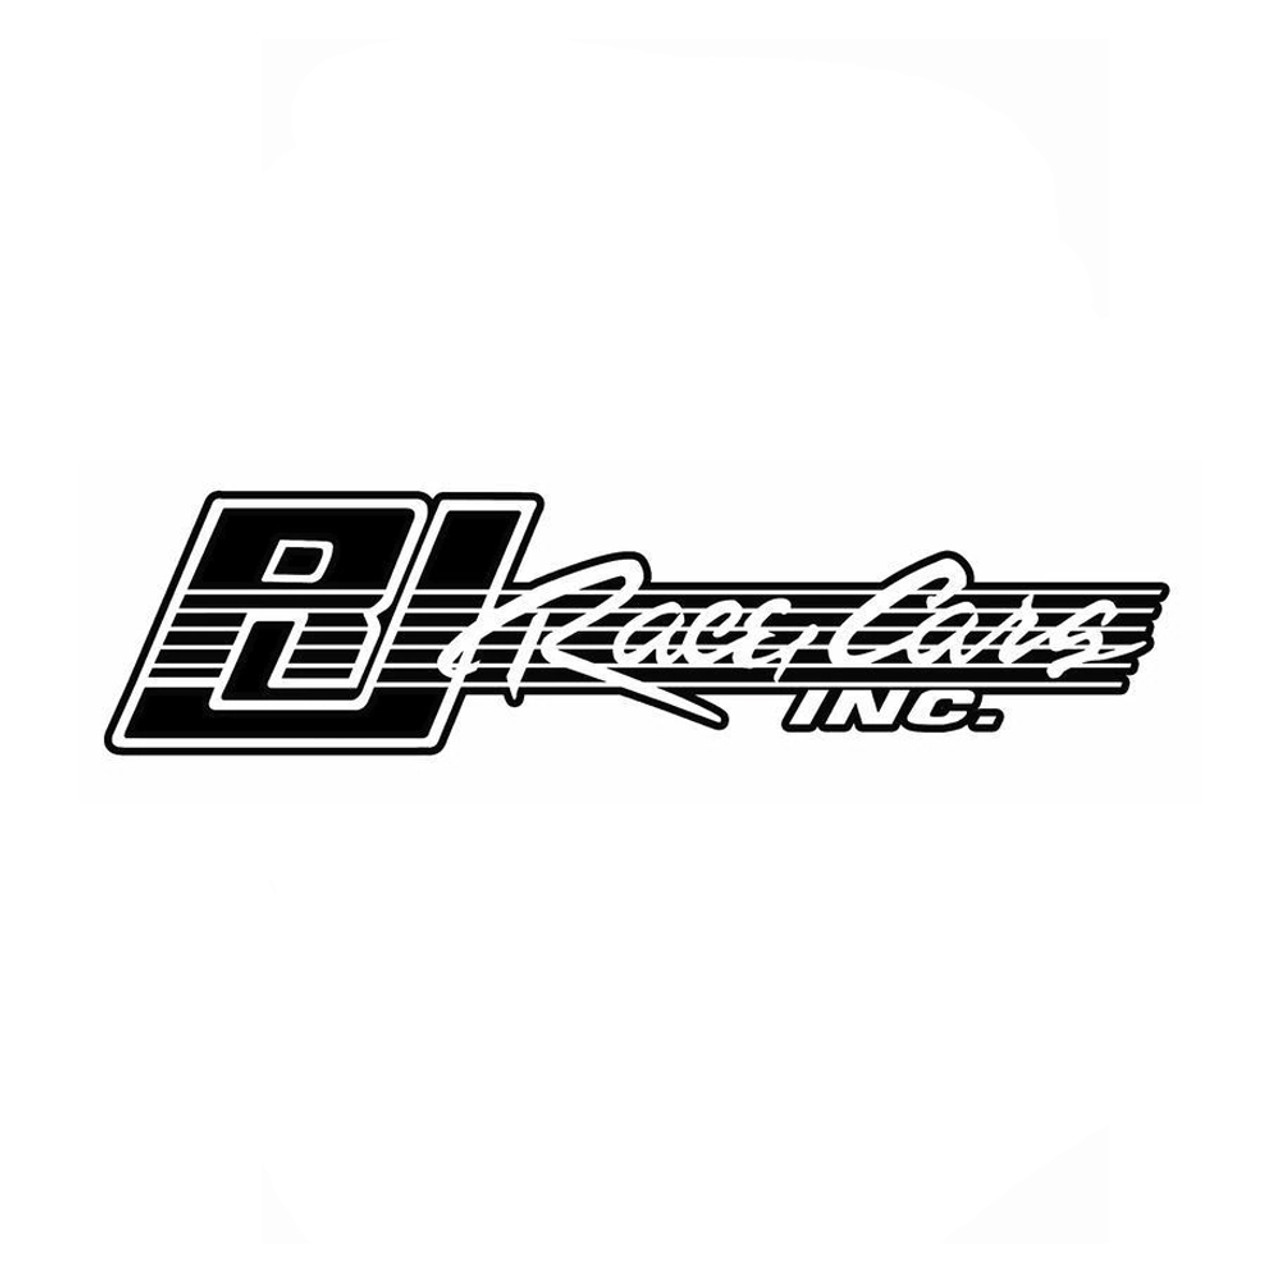 RJ Race Cars Black & White Decal | Quarter-Max